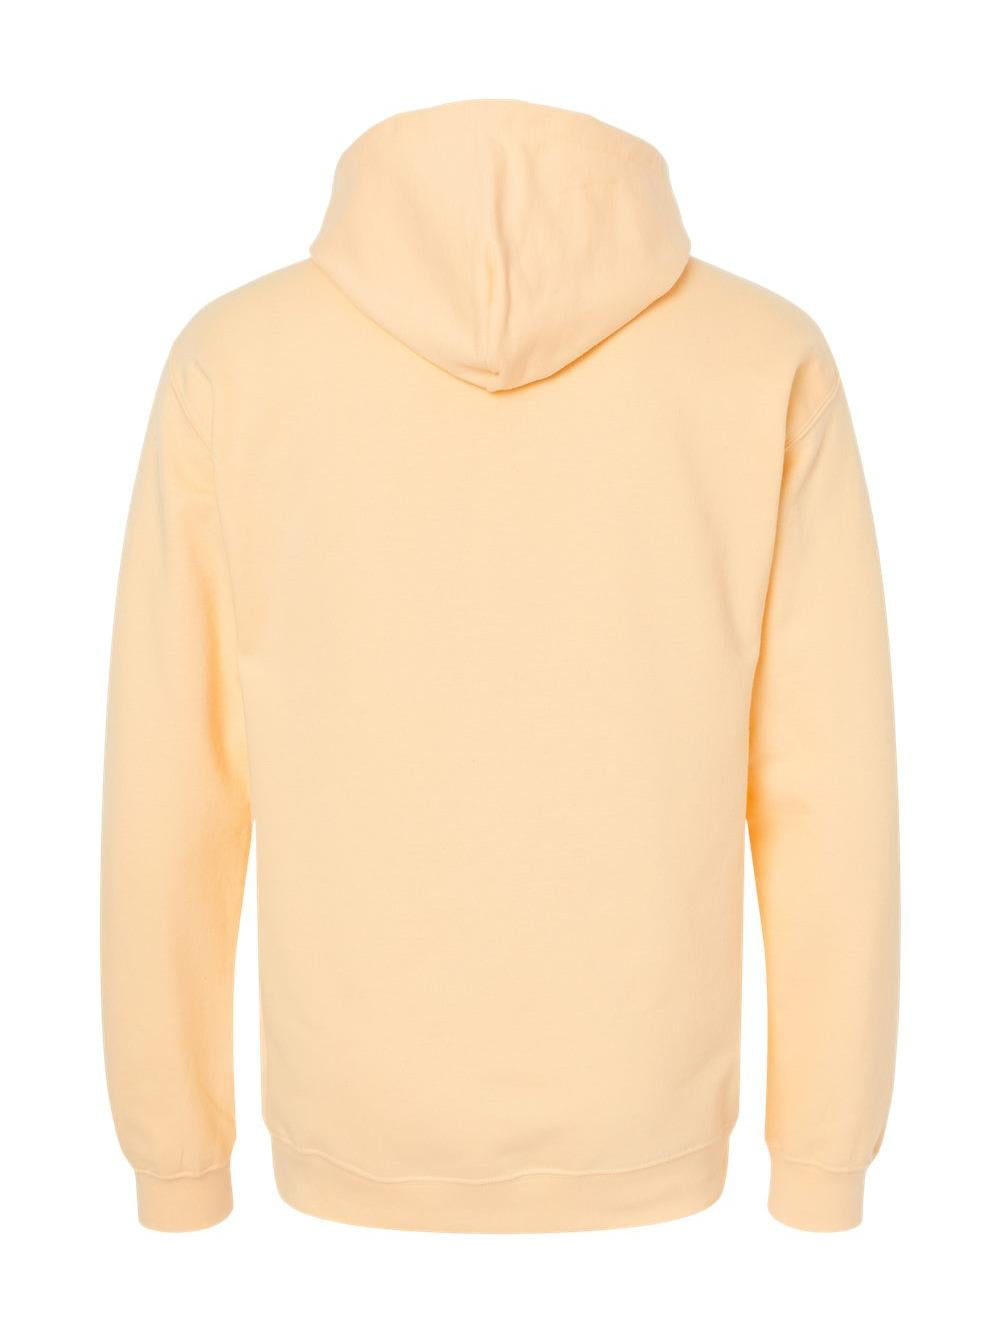 Gildan - Softstyle Hooded Sweatshirt - SF500 - Yellow Haze - Size: S 